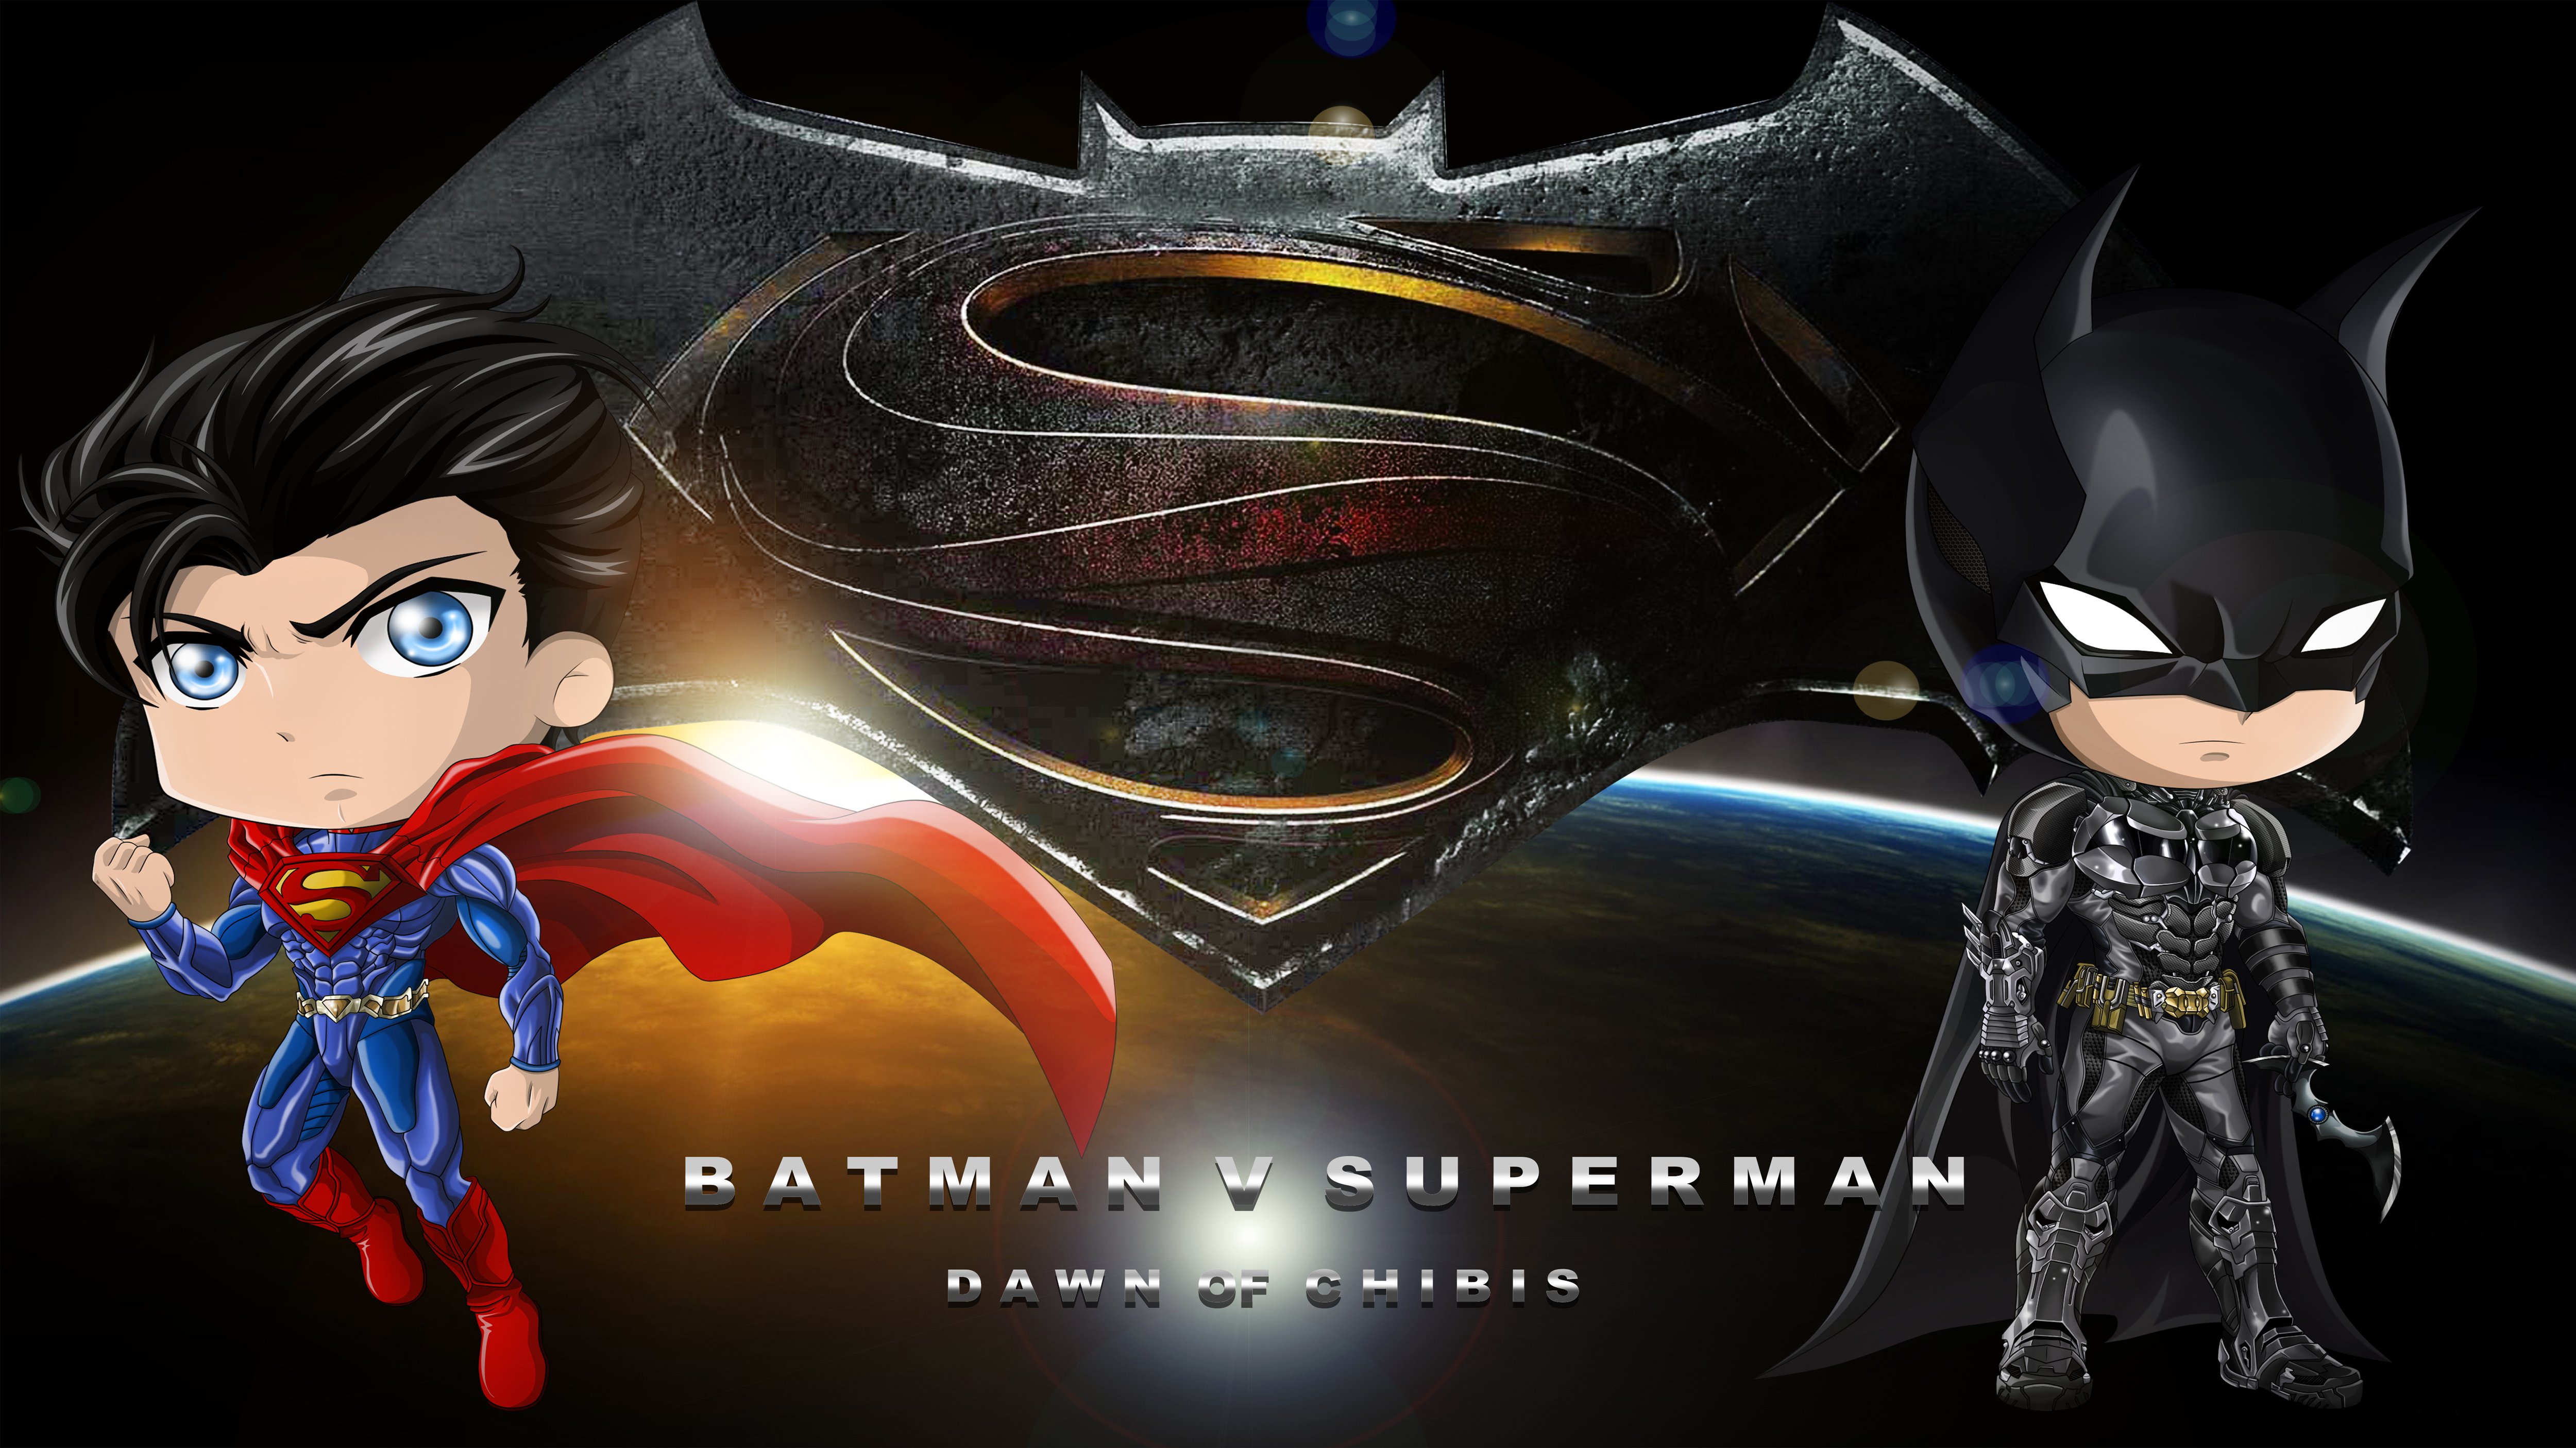 batman v superman, Adventure, Action, Batman, Superman, Dawn, Justice, Chibi Wallpaper